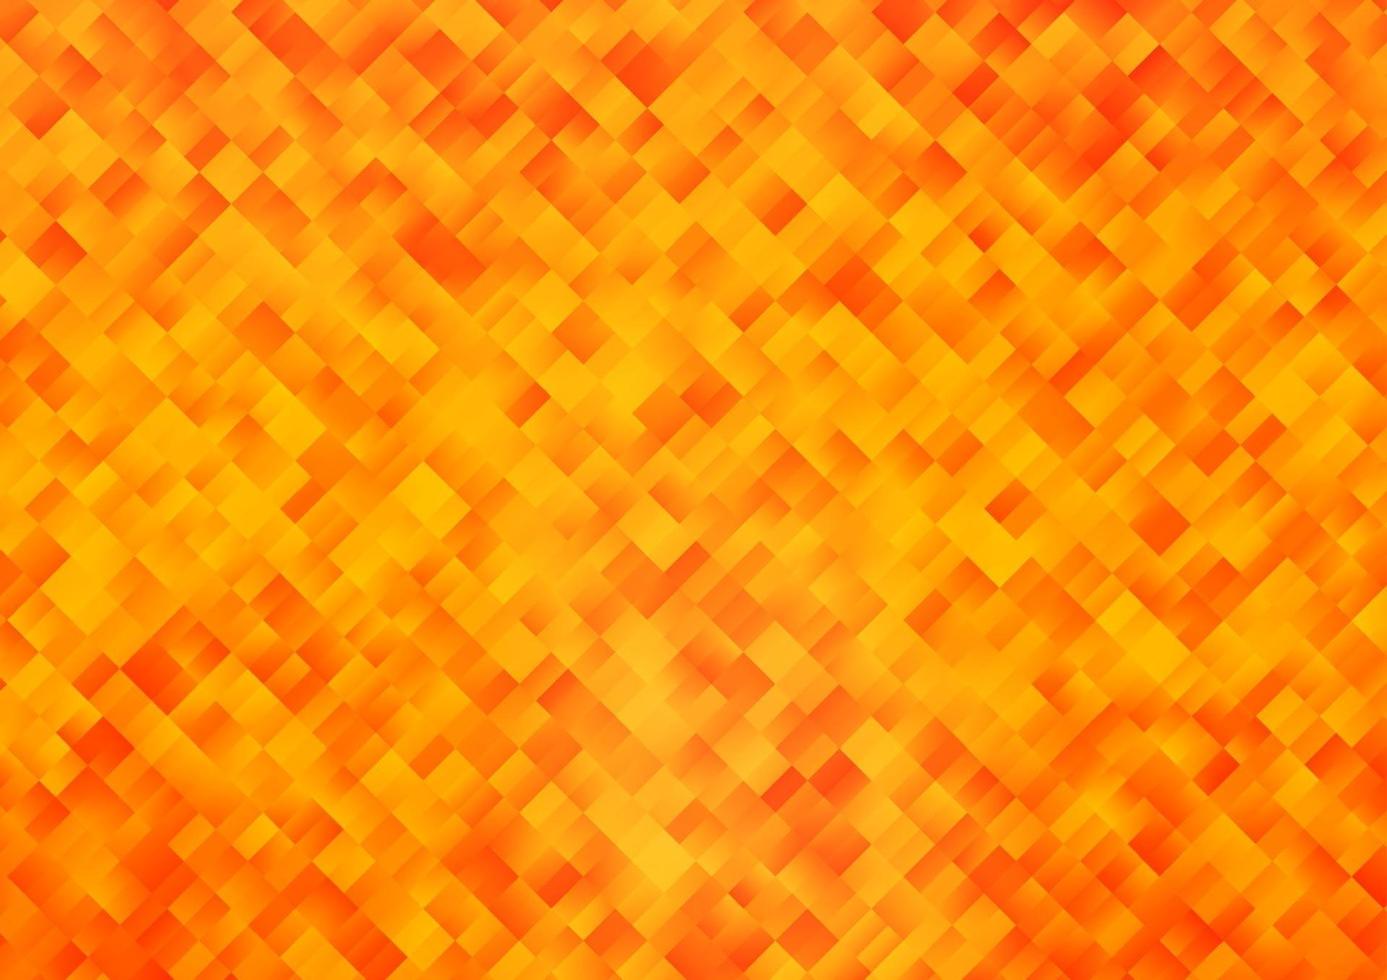 copertina vettoriale arancione chiaro in stile poligonale.